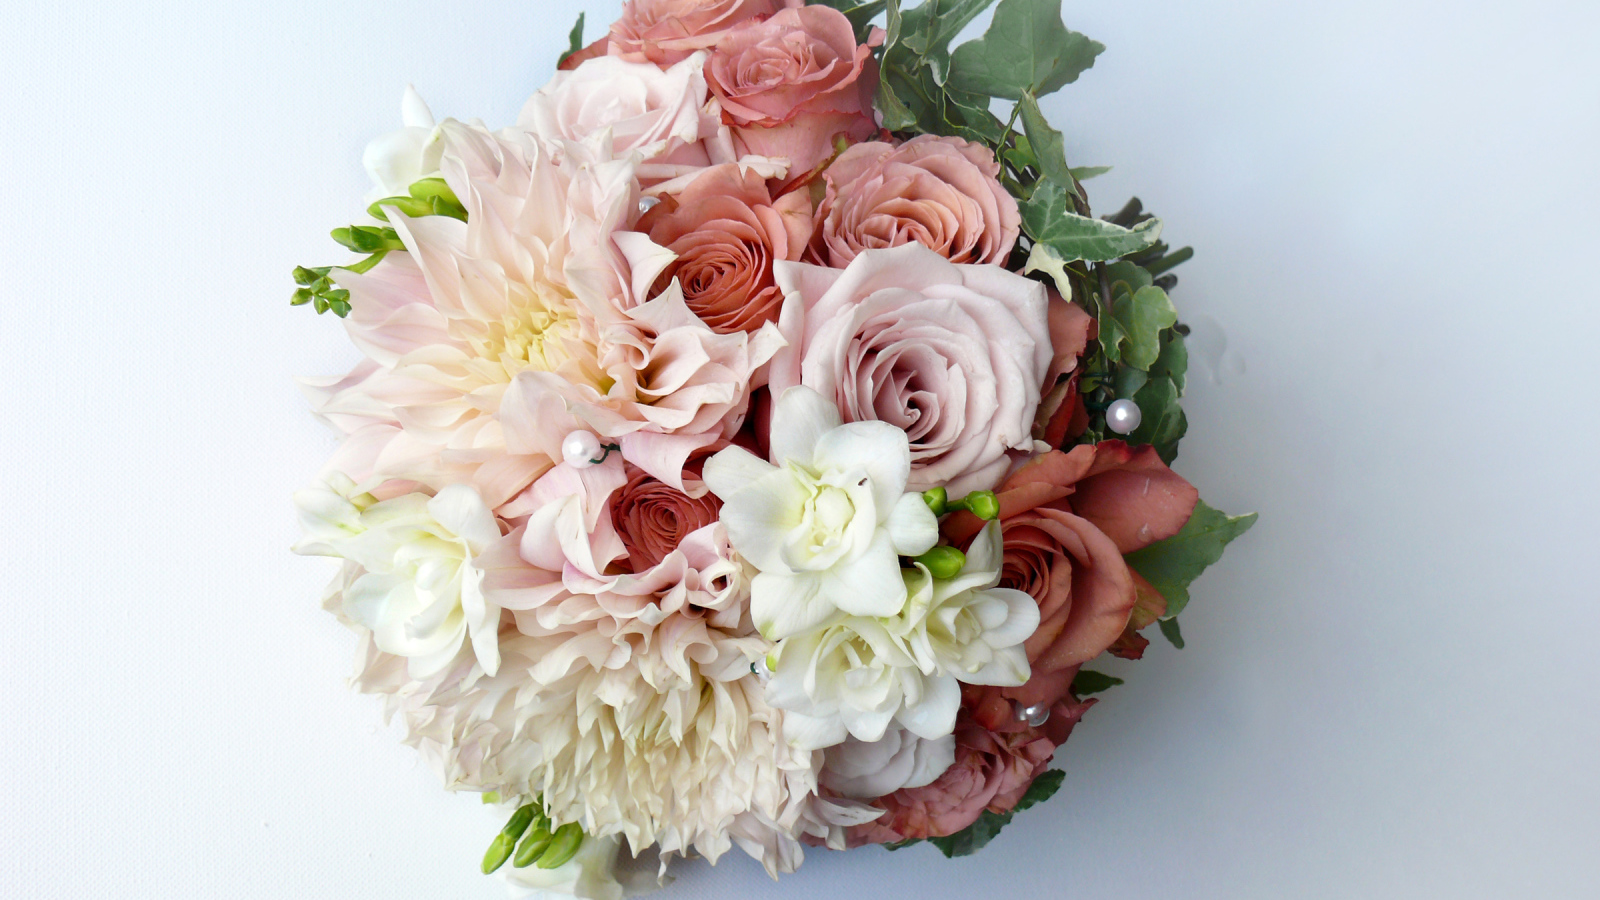 Букет с цветами роз и георгин на сером фоне 